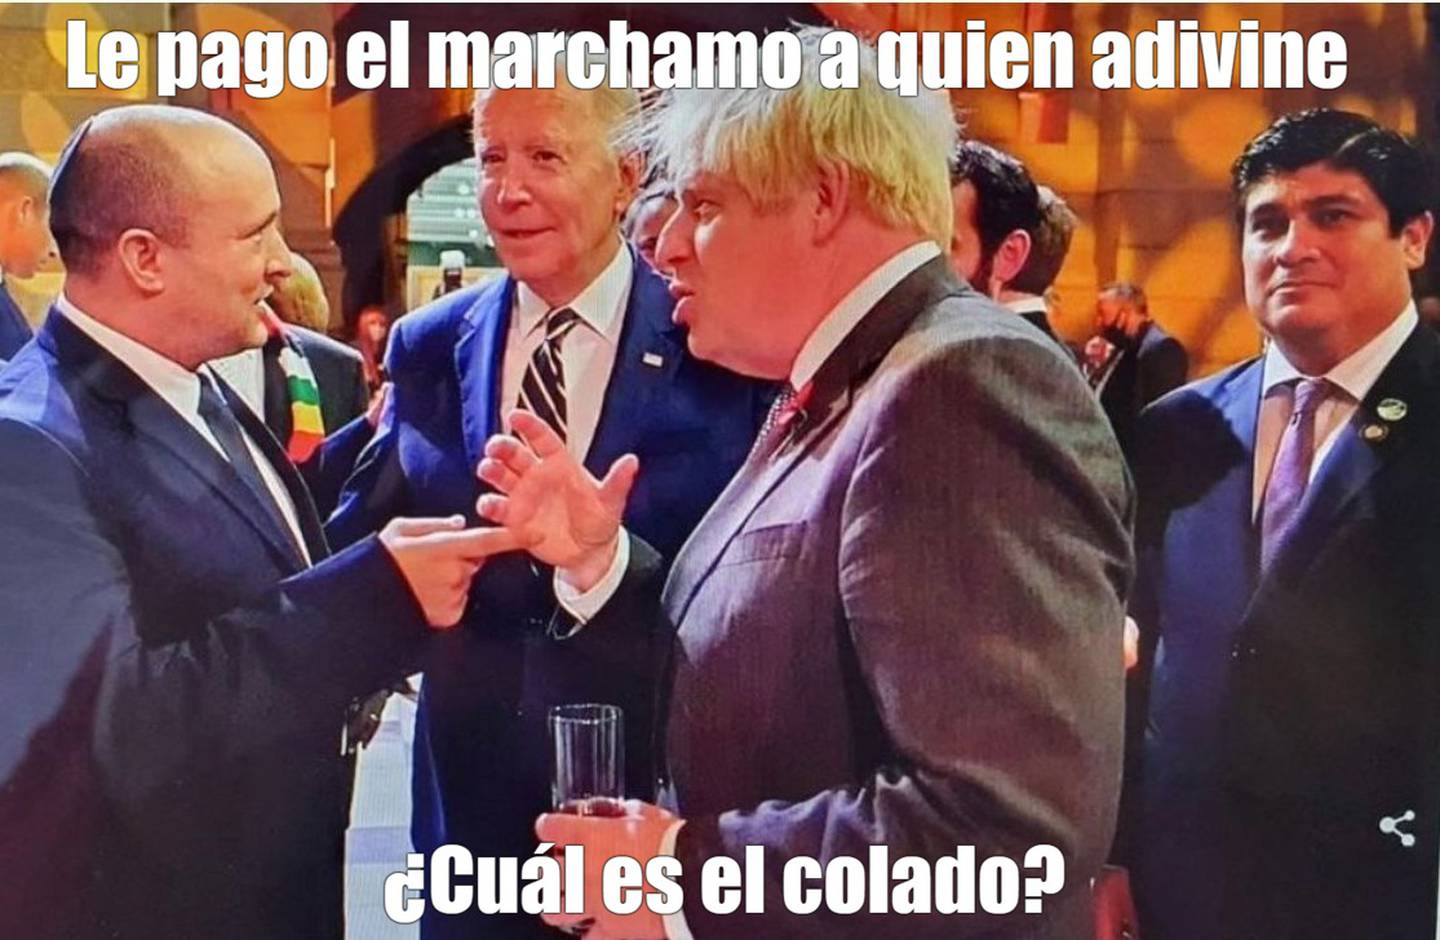 Dos fotos del presidente de Costa Rica, Carlos Alvarado, viajaron en las redes sociales a mil kilómetros por hora este martes 2 de noviembre y alcanzaron para todo tipo de memes y burlas